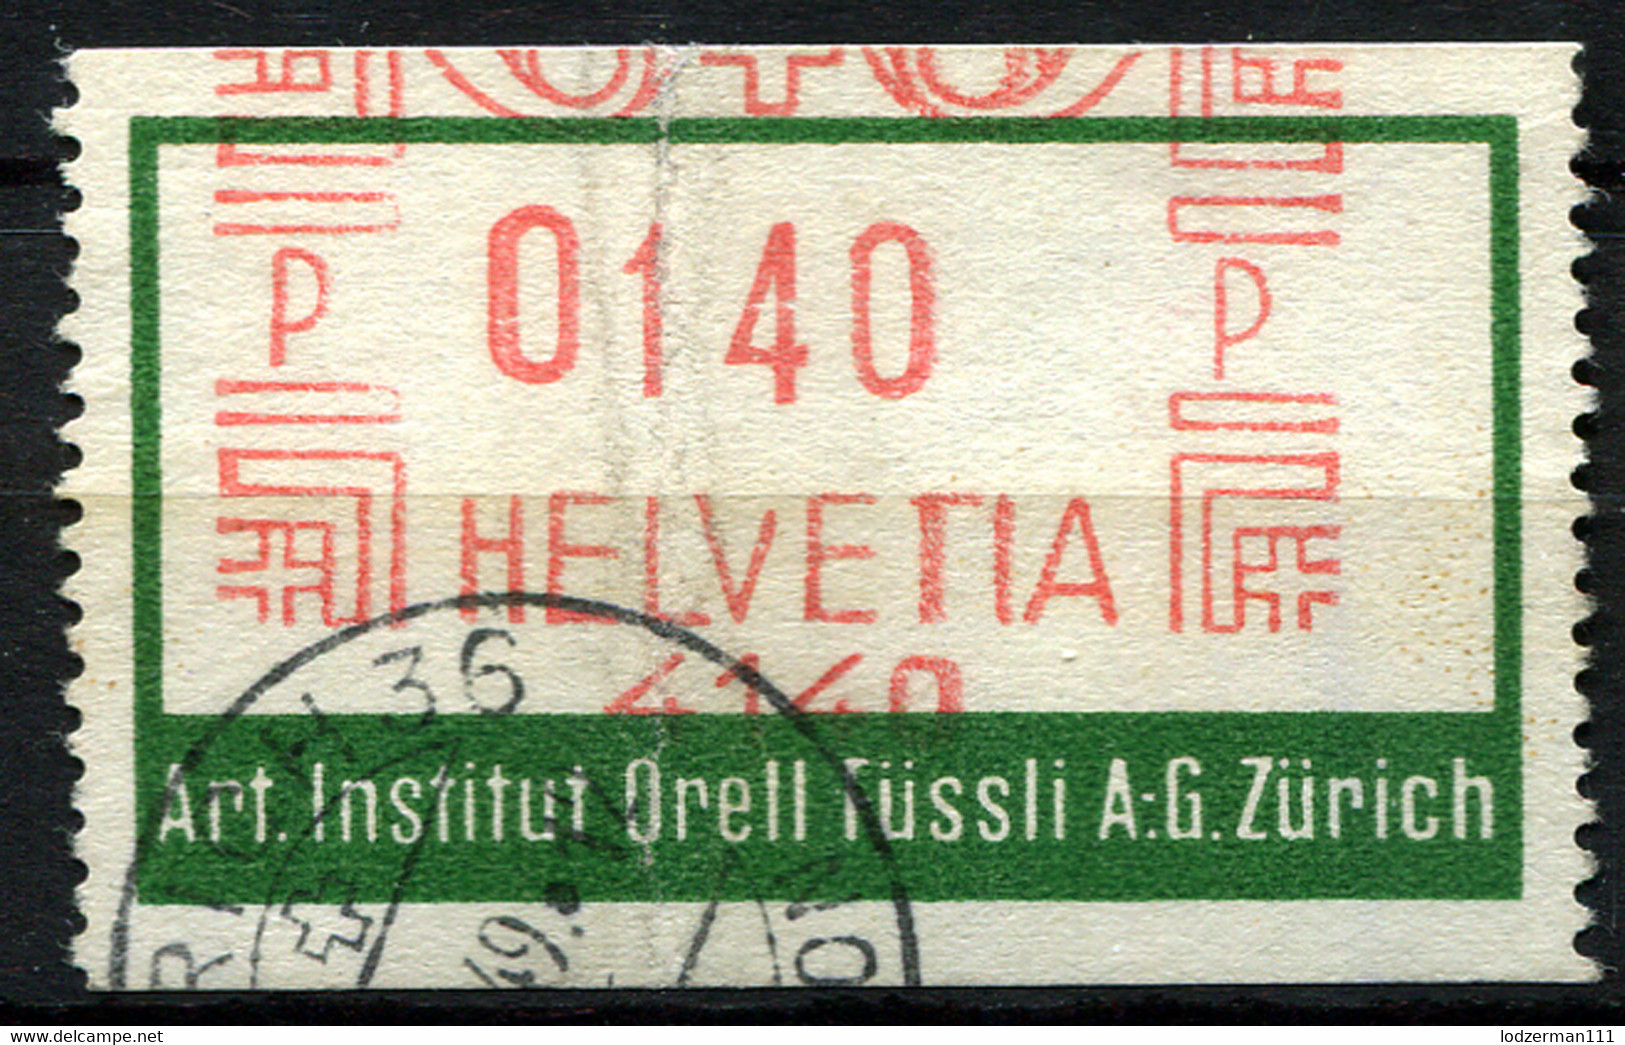 ZURICH 1949 Art. Institut Orell - Machine Meter Stamp - Postage Meters